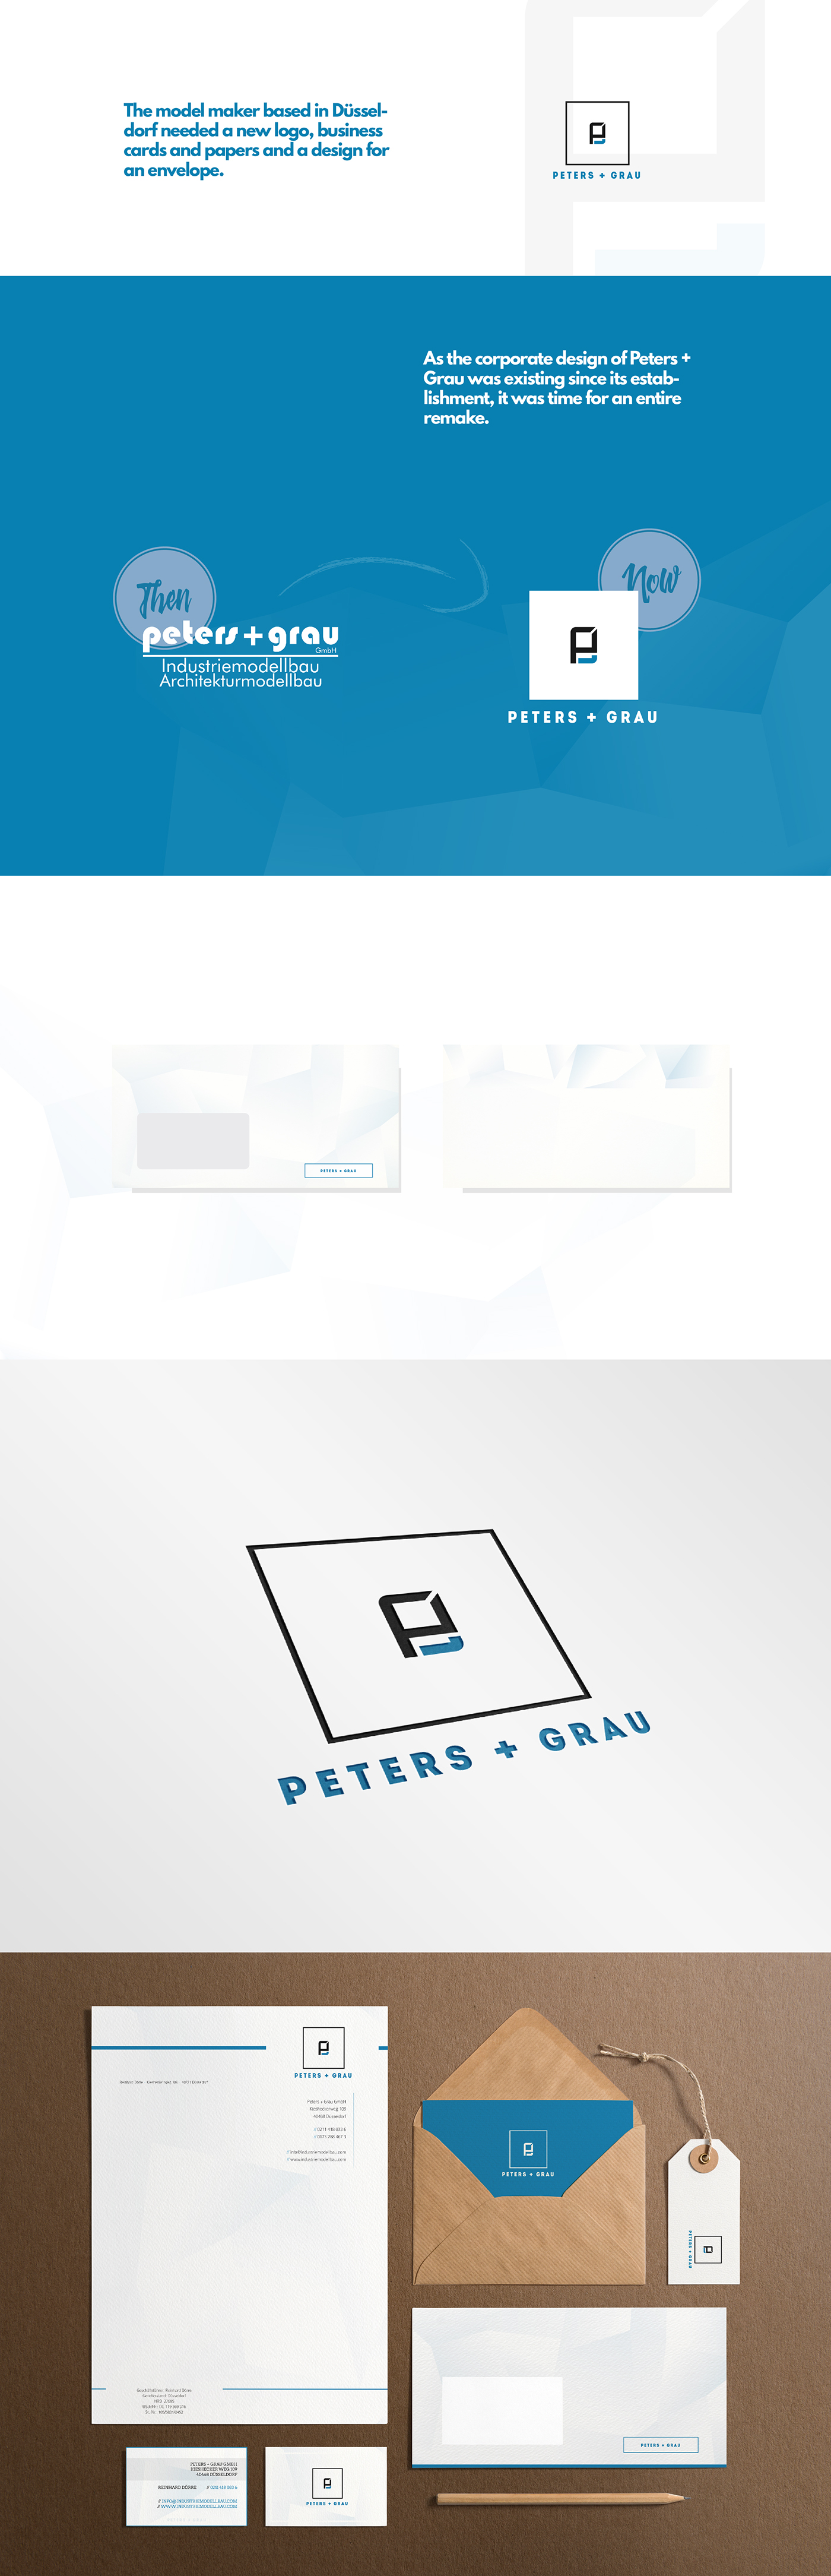 Corporate Design Business Cards Stationery envelope model maker Logo Design Düsseldorf